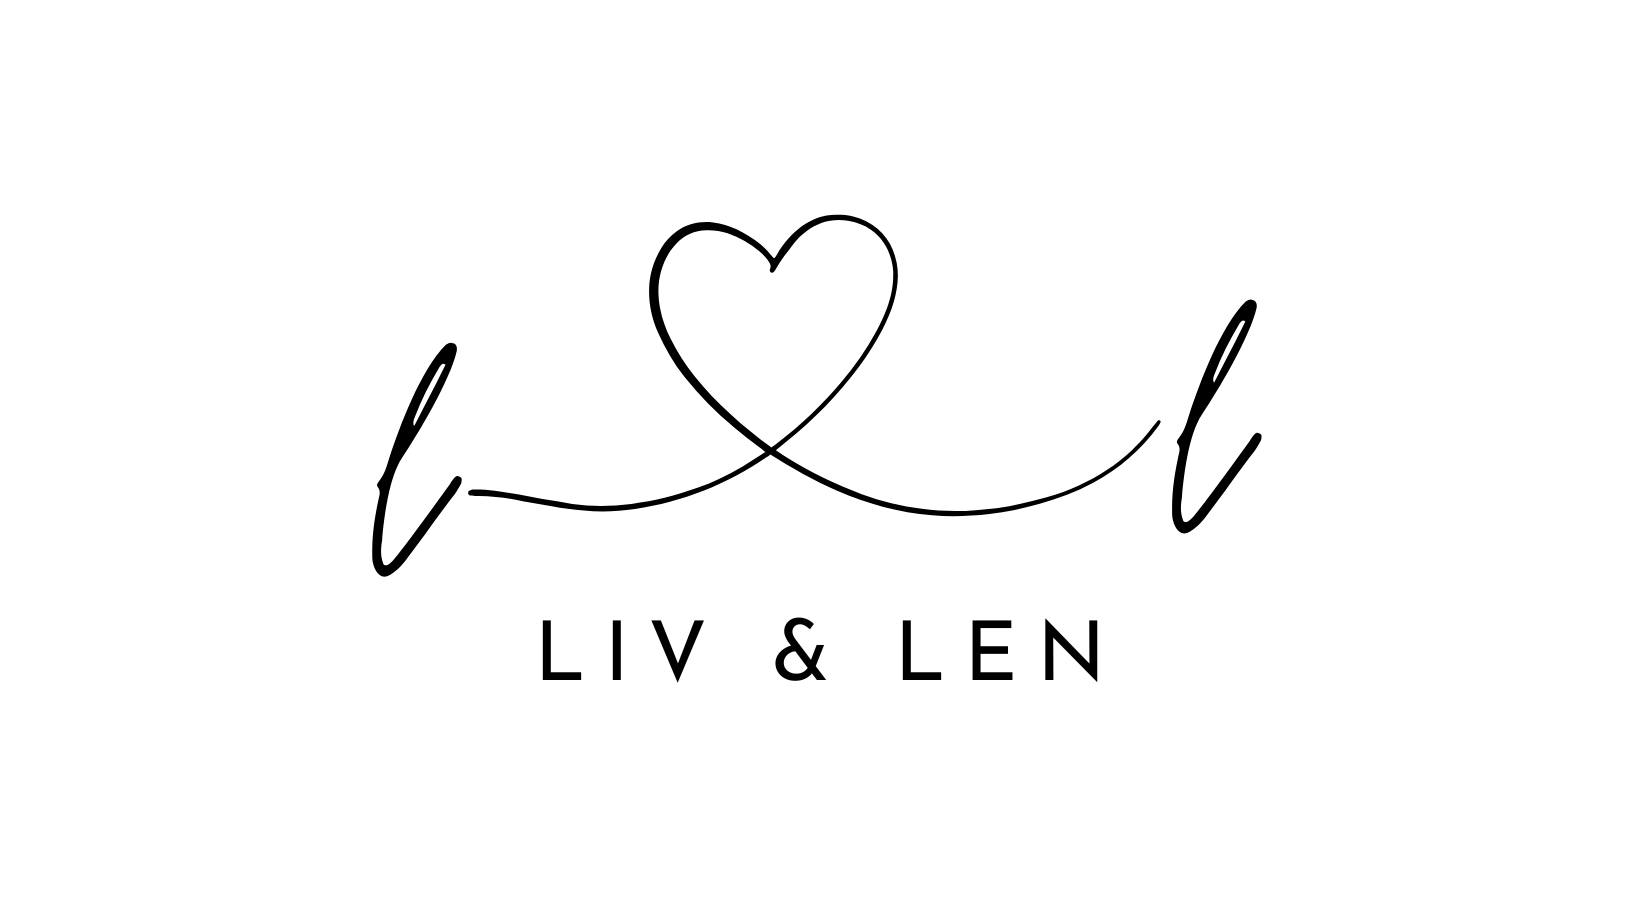 LIV & LEN